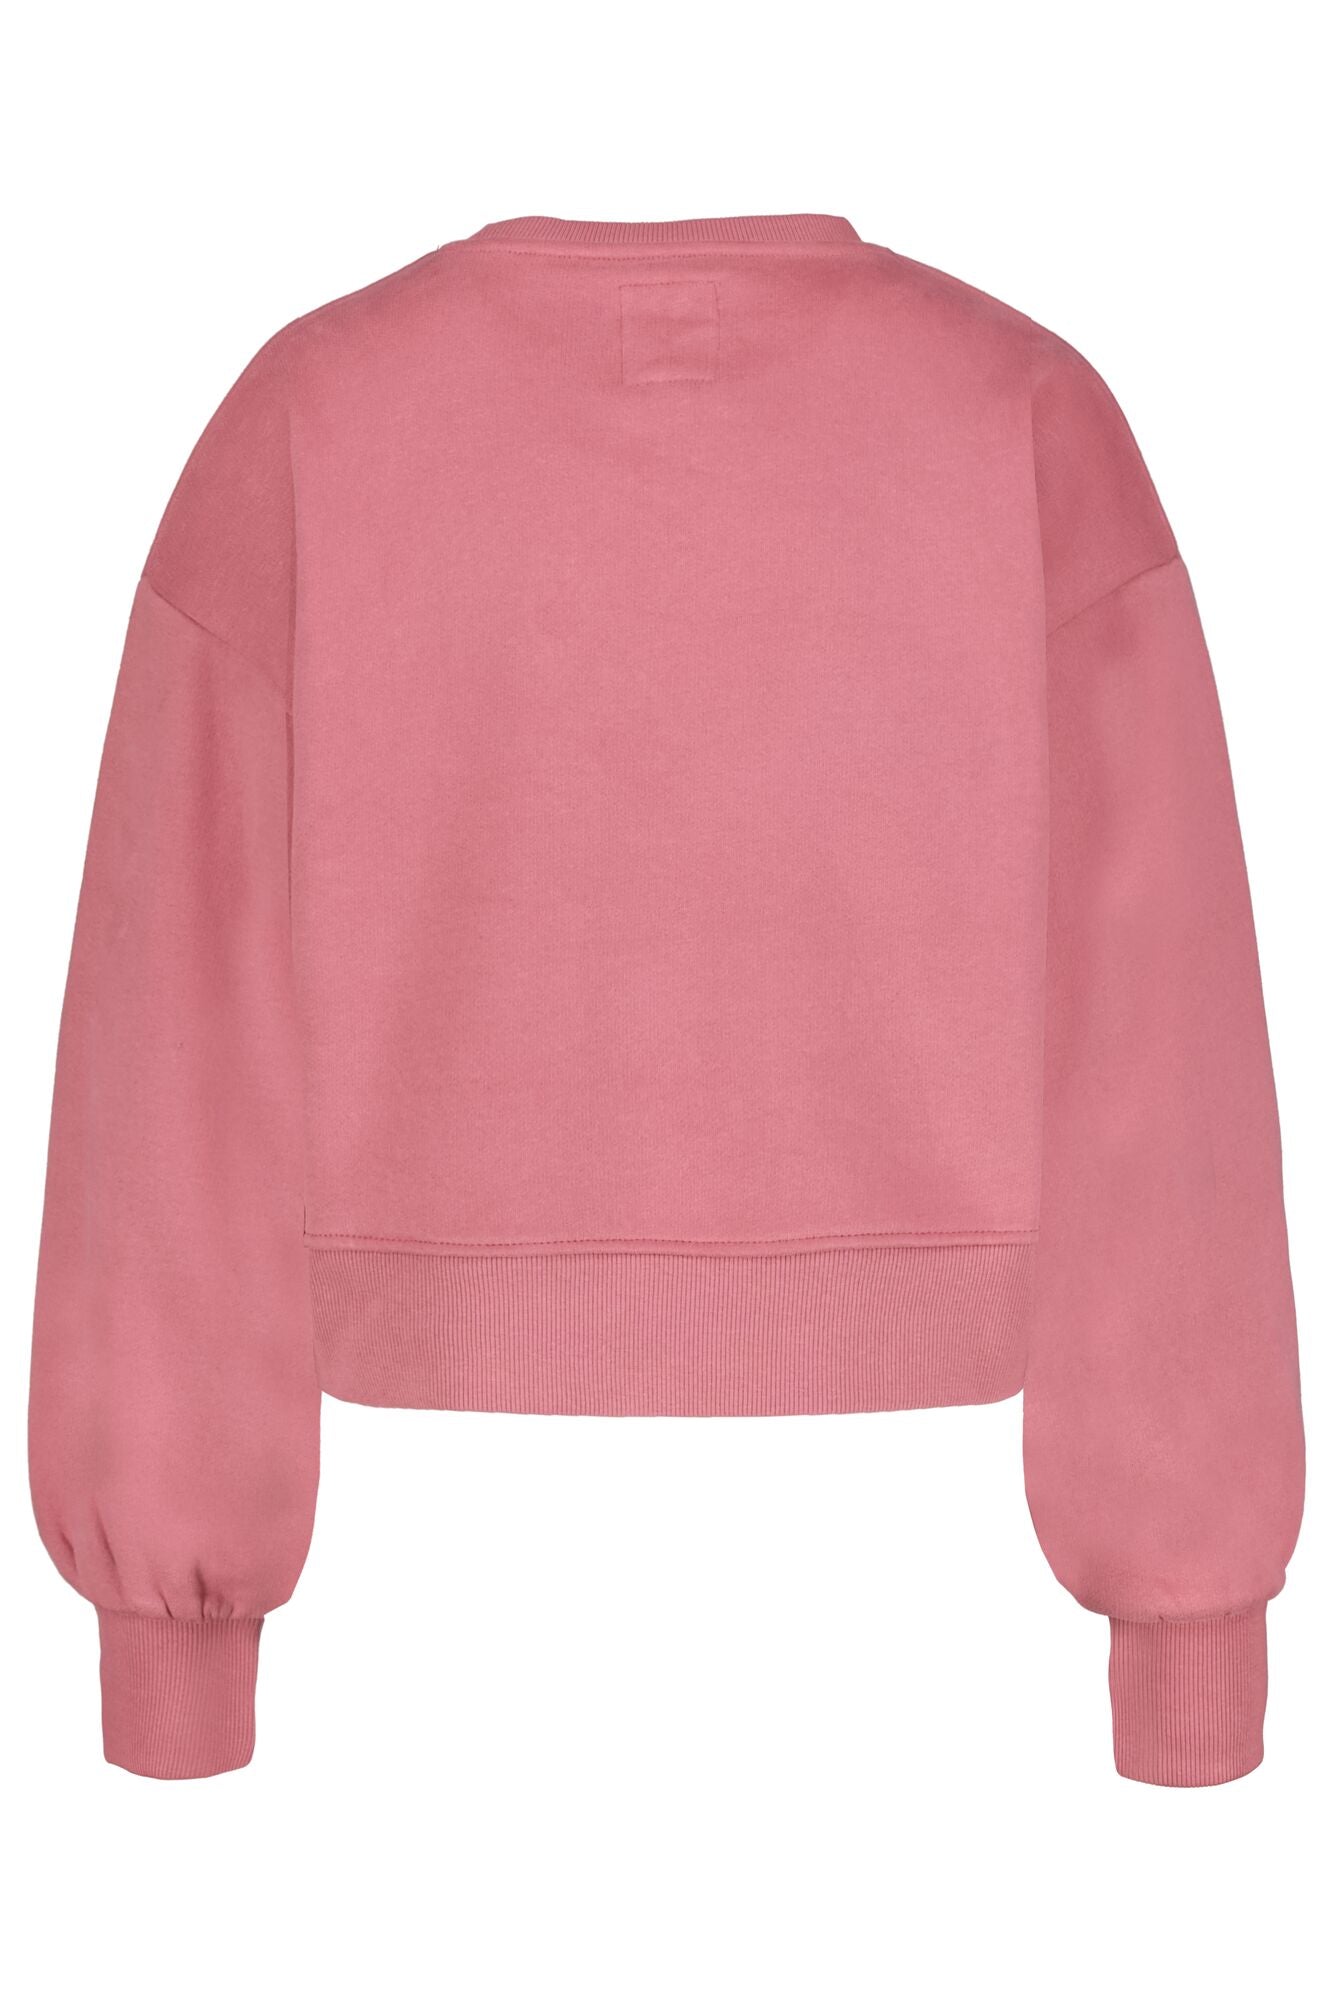 Garica Girls Teens sweater I32461 girls sweat